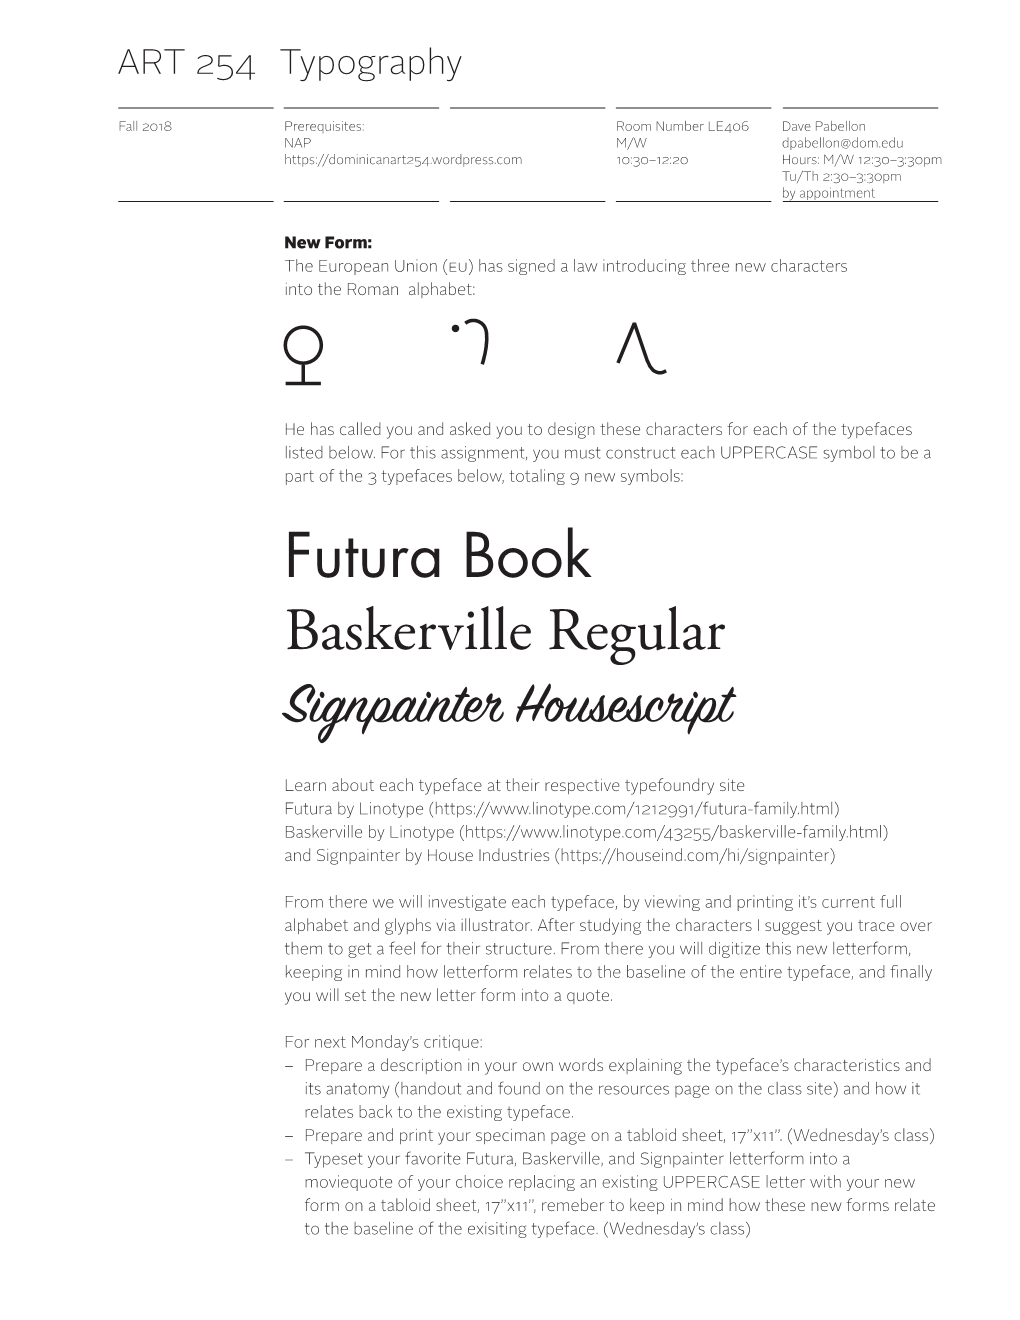 Futura Book Baskerville Regular Signpainter Housescript